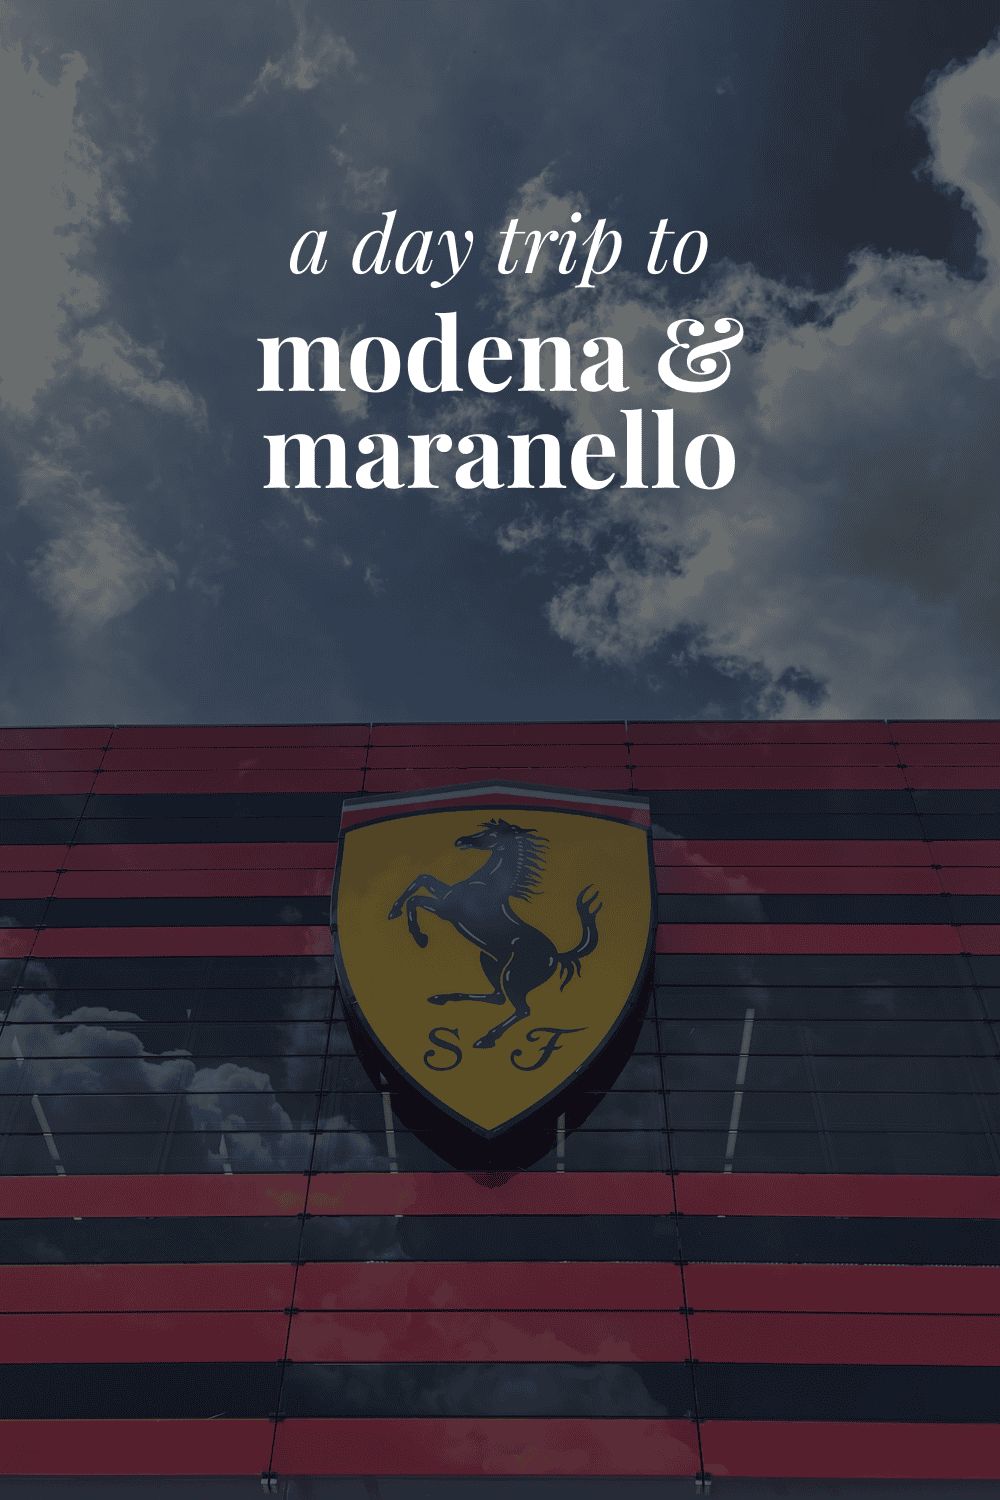 The Scuderia Ferrari building in Maranello with the words 'a day trip to modena & maranello' on top